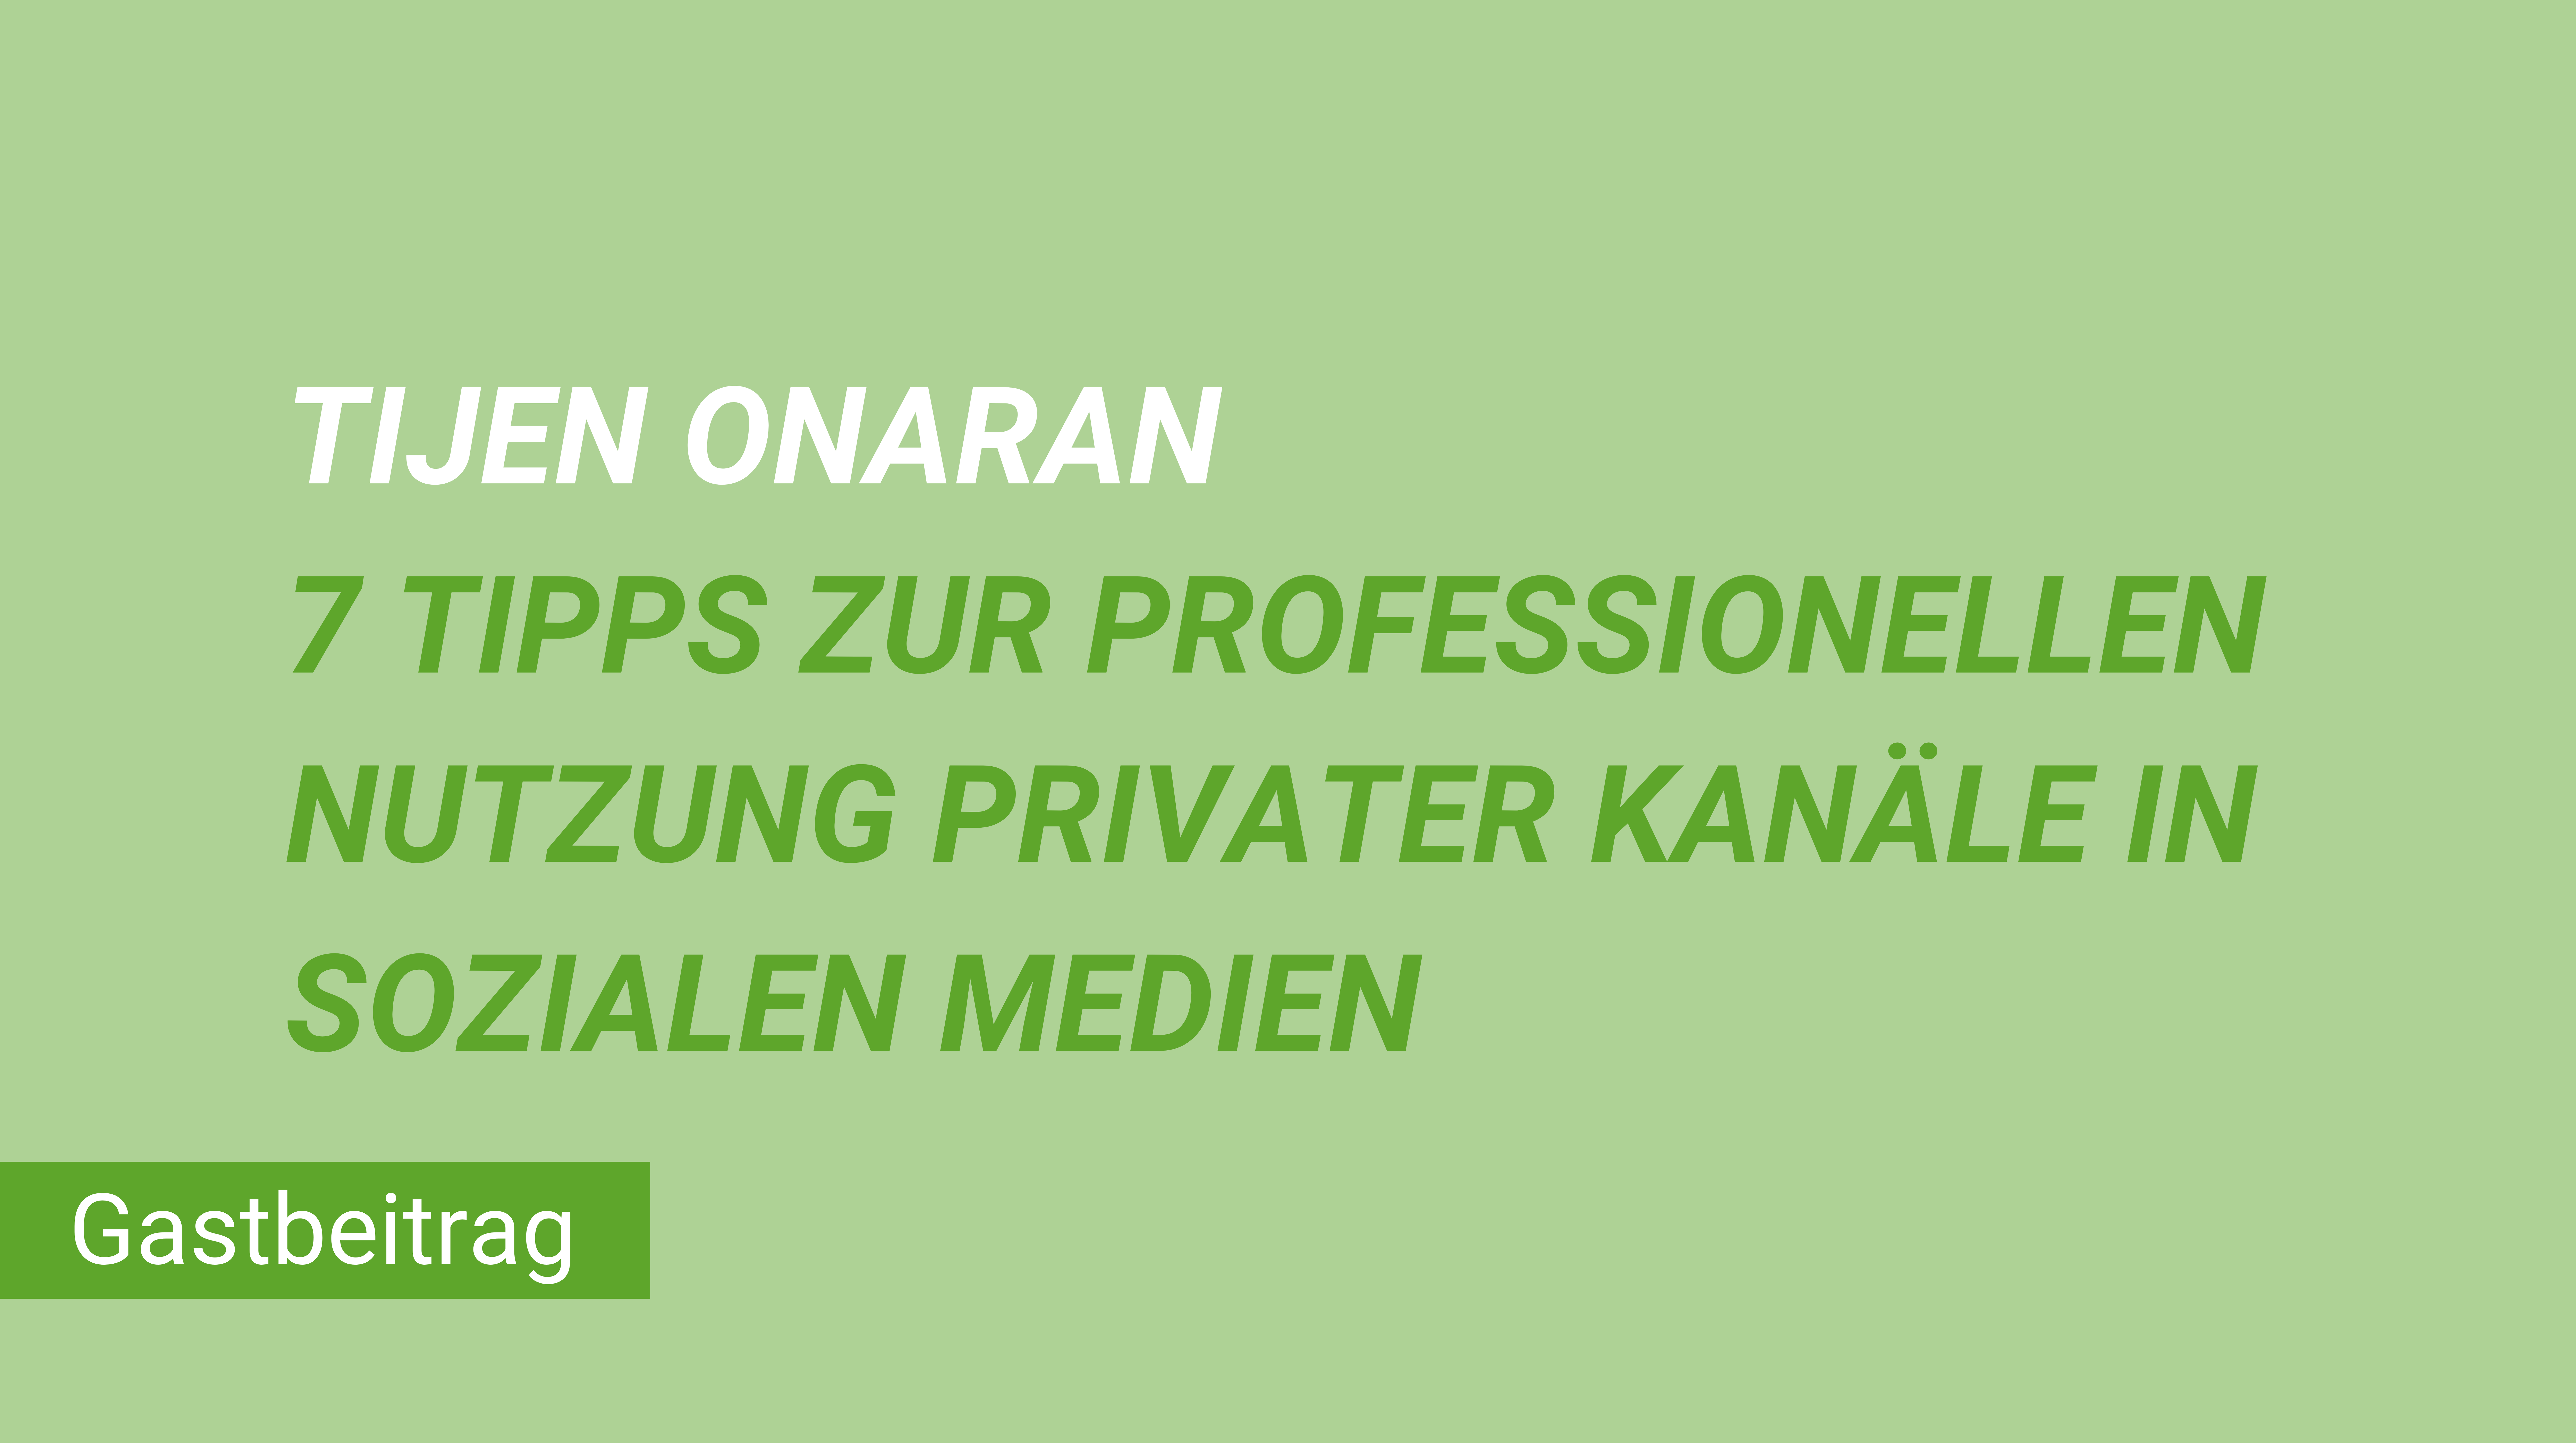 Weiterblättern zum Gastbeitrag Tijen Onaran 7 Tipps zur professionellen Nutzung privater Kanäle in Sozialen Medien